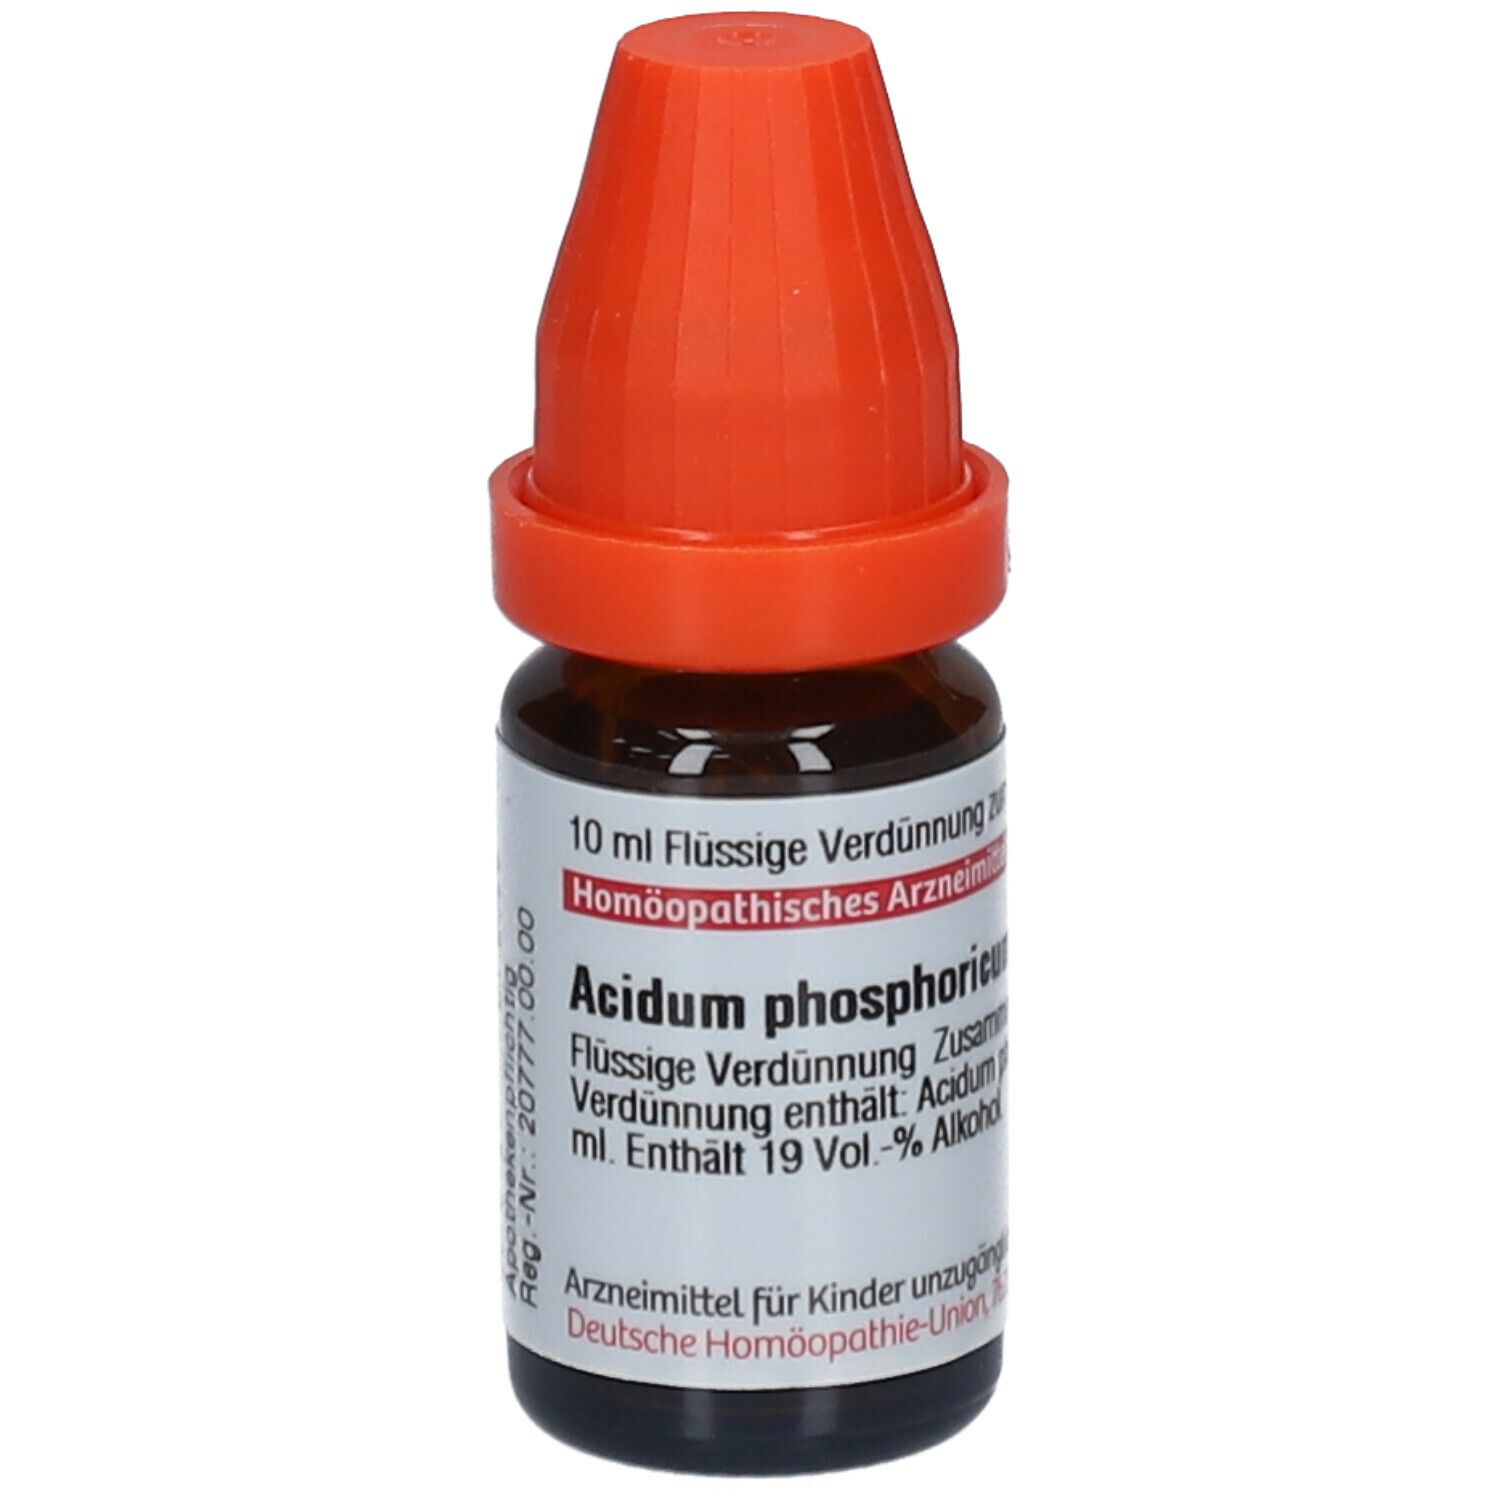 DHU Acidum Phosphoricum LM XVIII